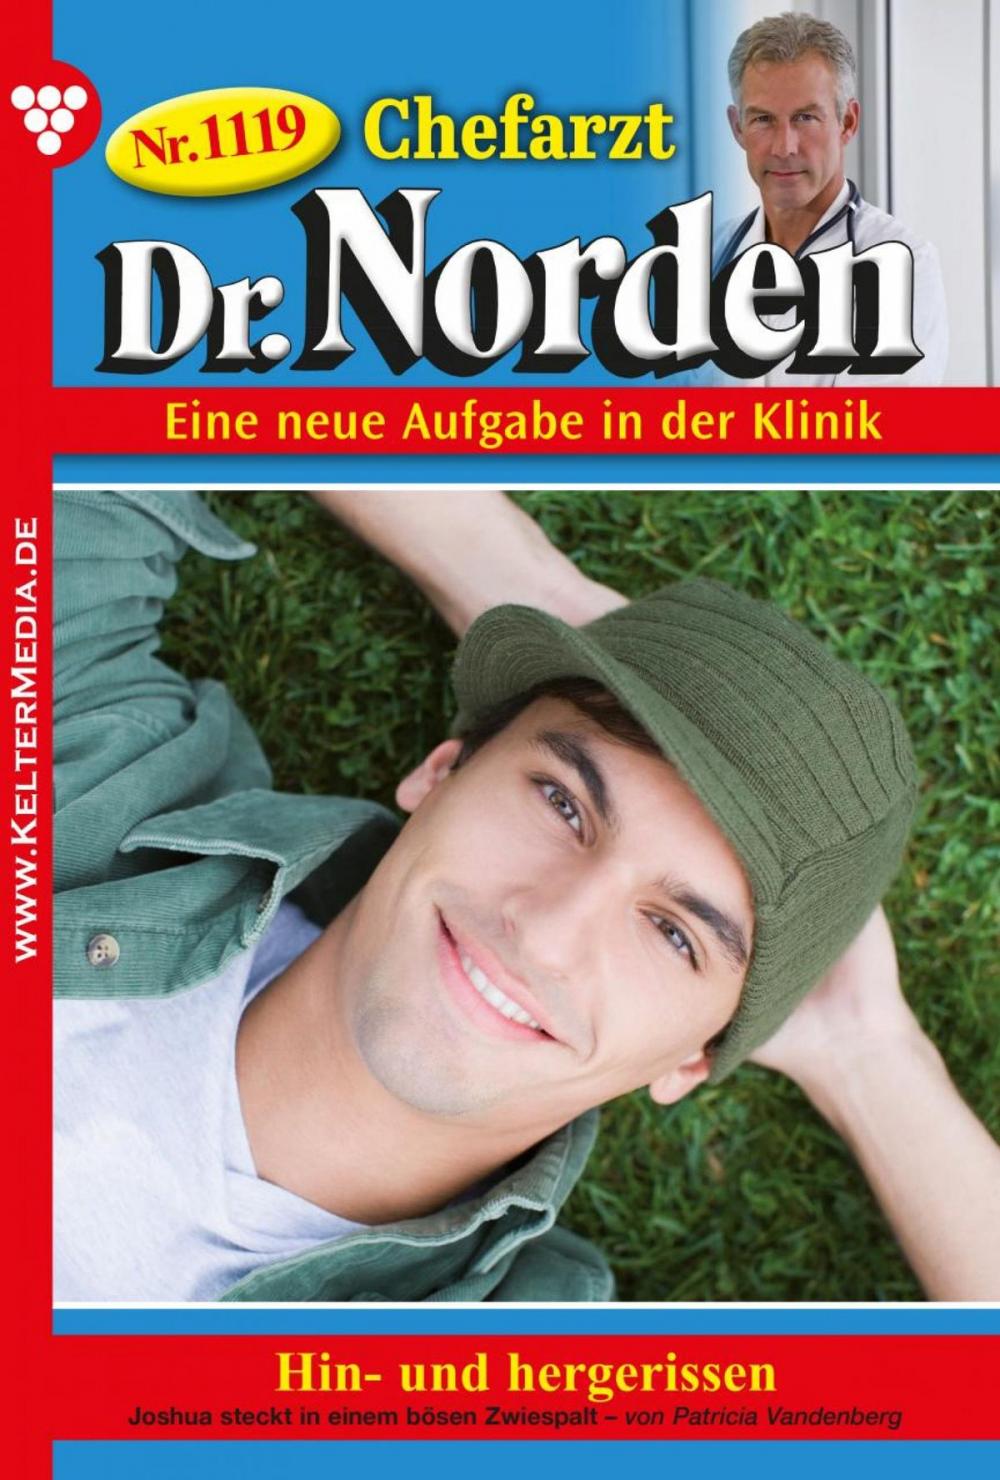 Big bigCover of Chefarzt Dr. Norden 1119 – Arztroman